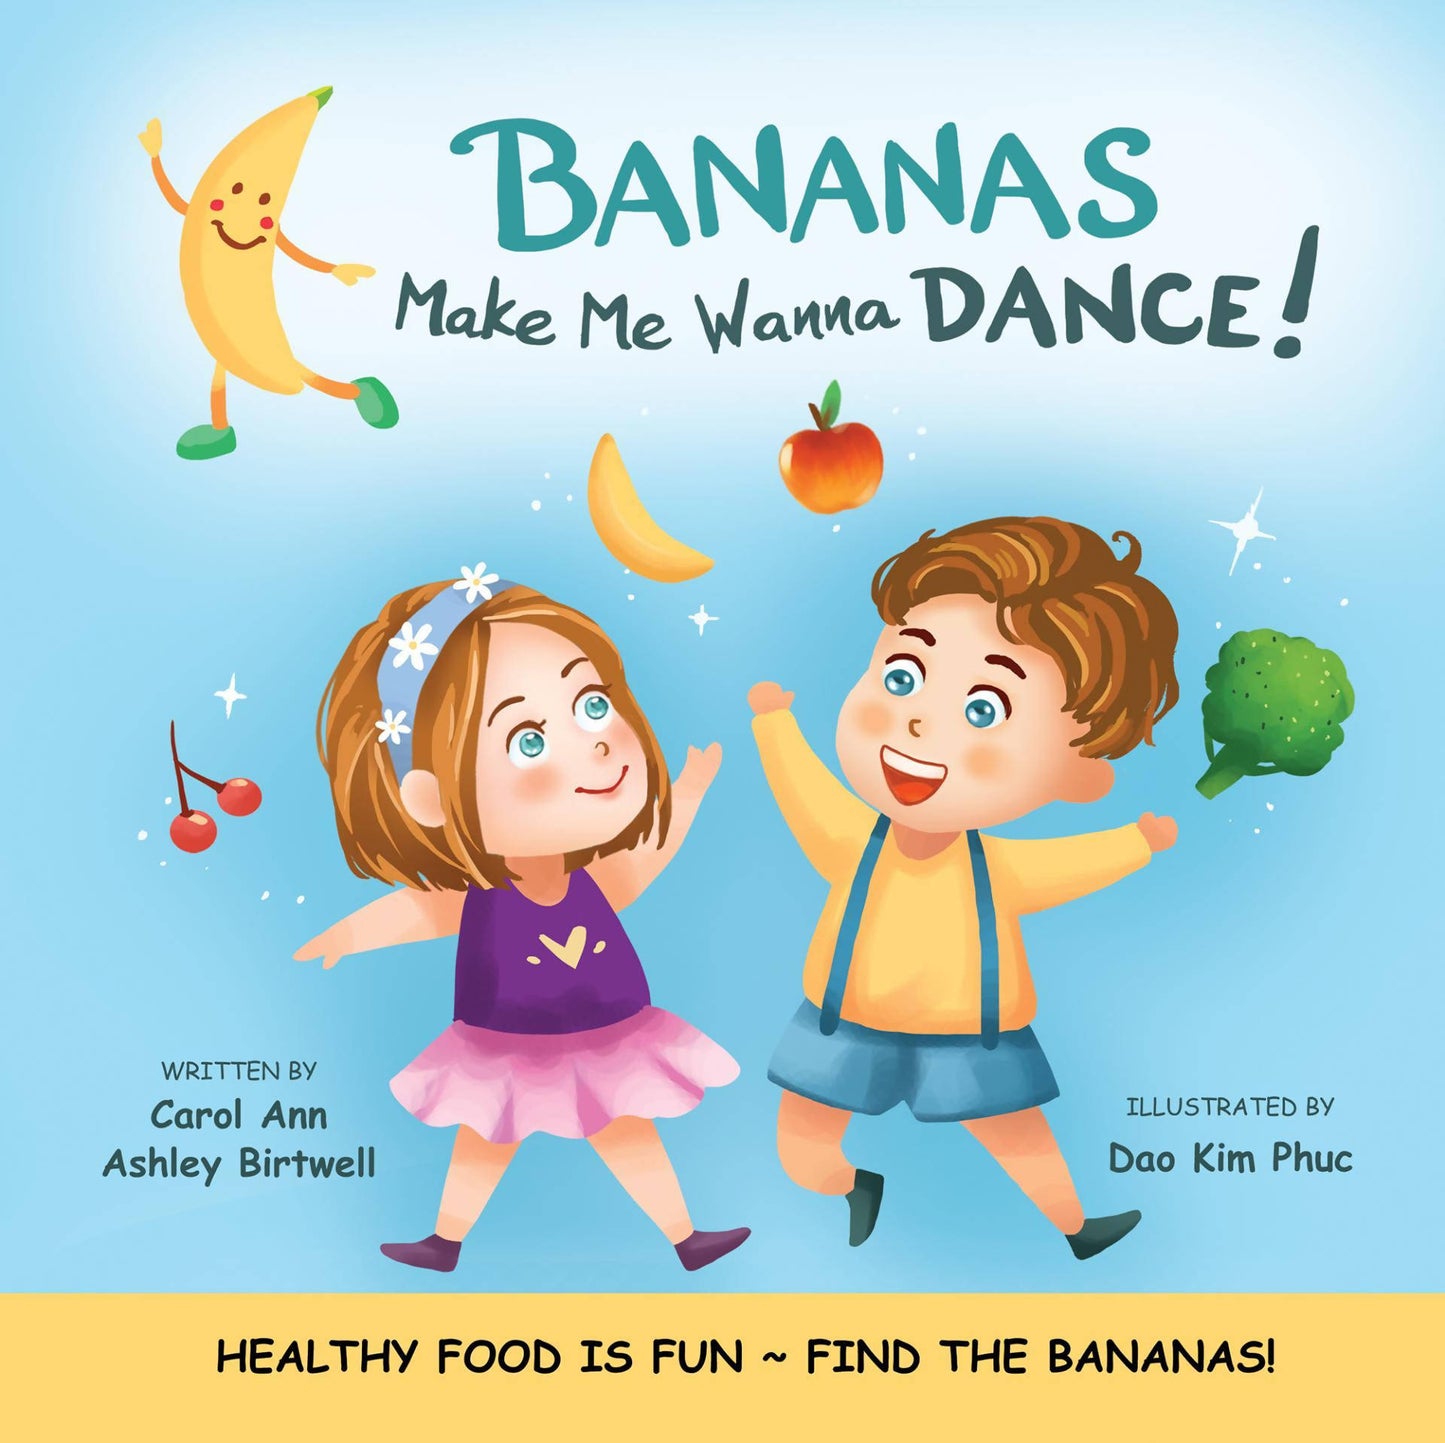 Bananas Make Me Wanna Dance!